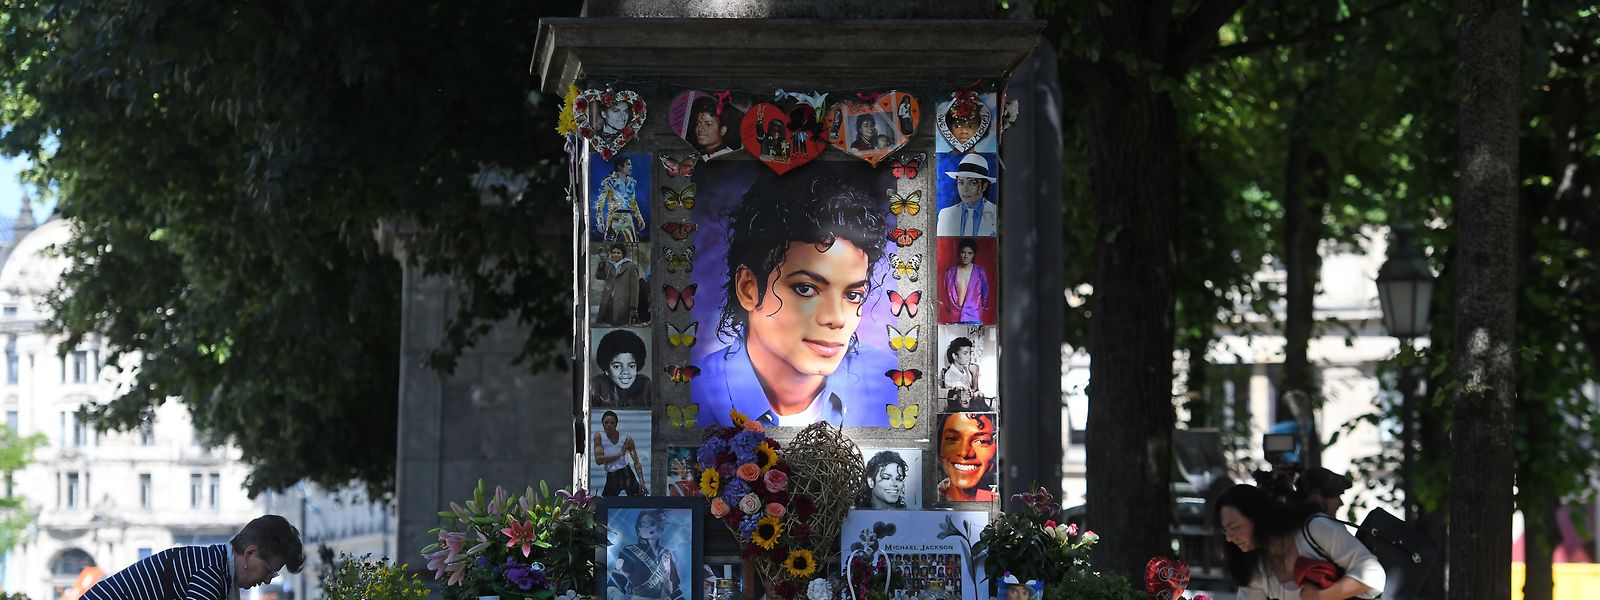 Zwei Frauen schmücken das Michael Jackson-Denkmal am Promenadeplatz vor der Fan-Gedenkfeier zum zehnten Todestag von Michael Jackson. Eigentlich ist das Denkmal Orlando di Lasso gewidmet; aber es steht gegenüber dem Hotel, dass Jackson nutzte, wenn er in München zu Gast war.